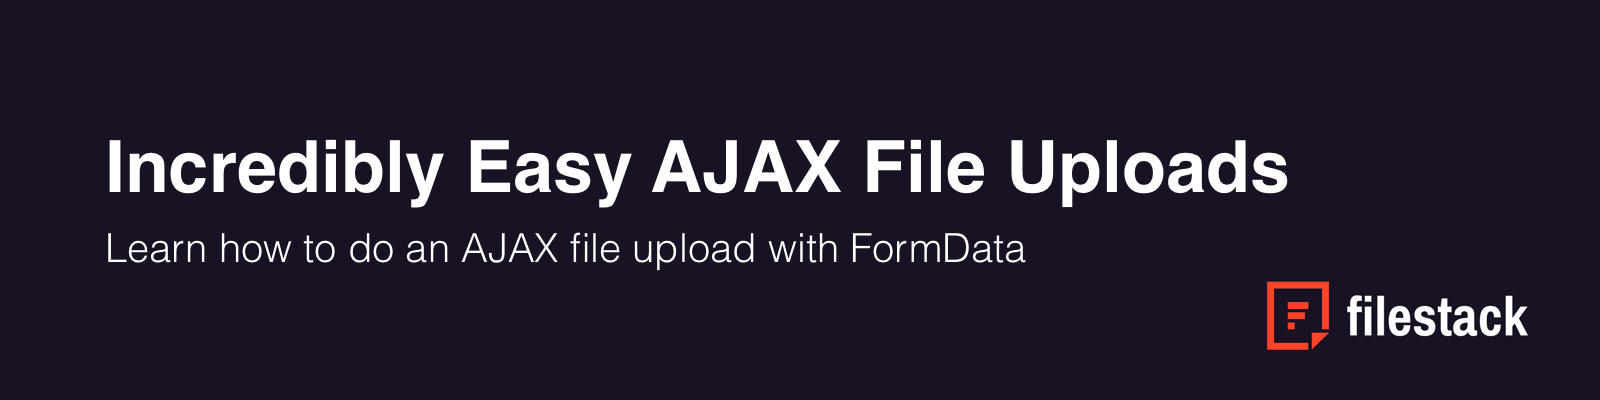 AJAX File Upload